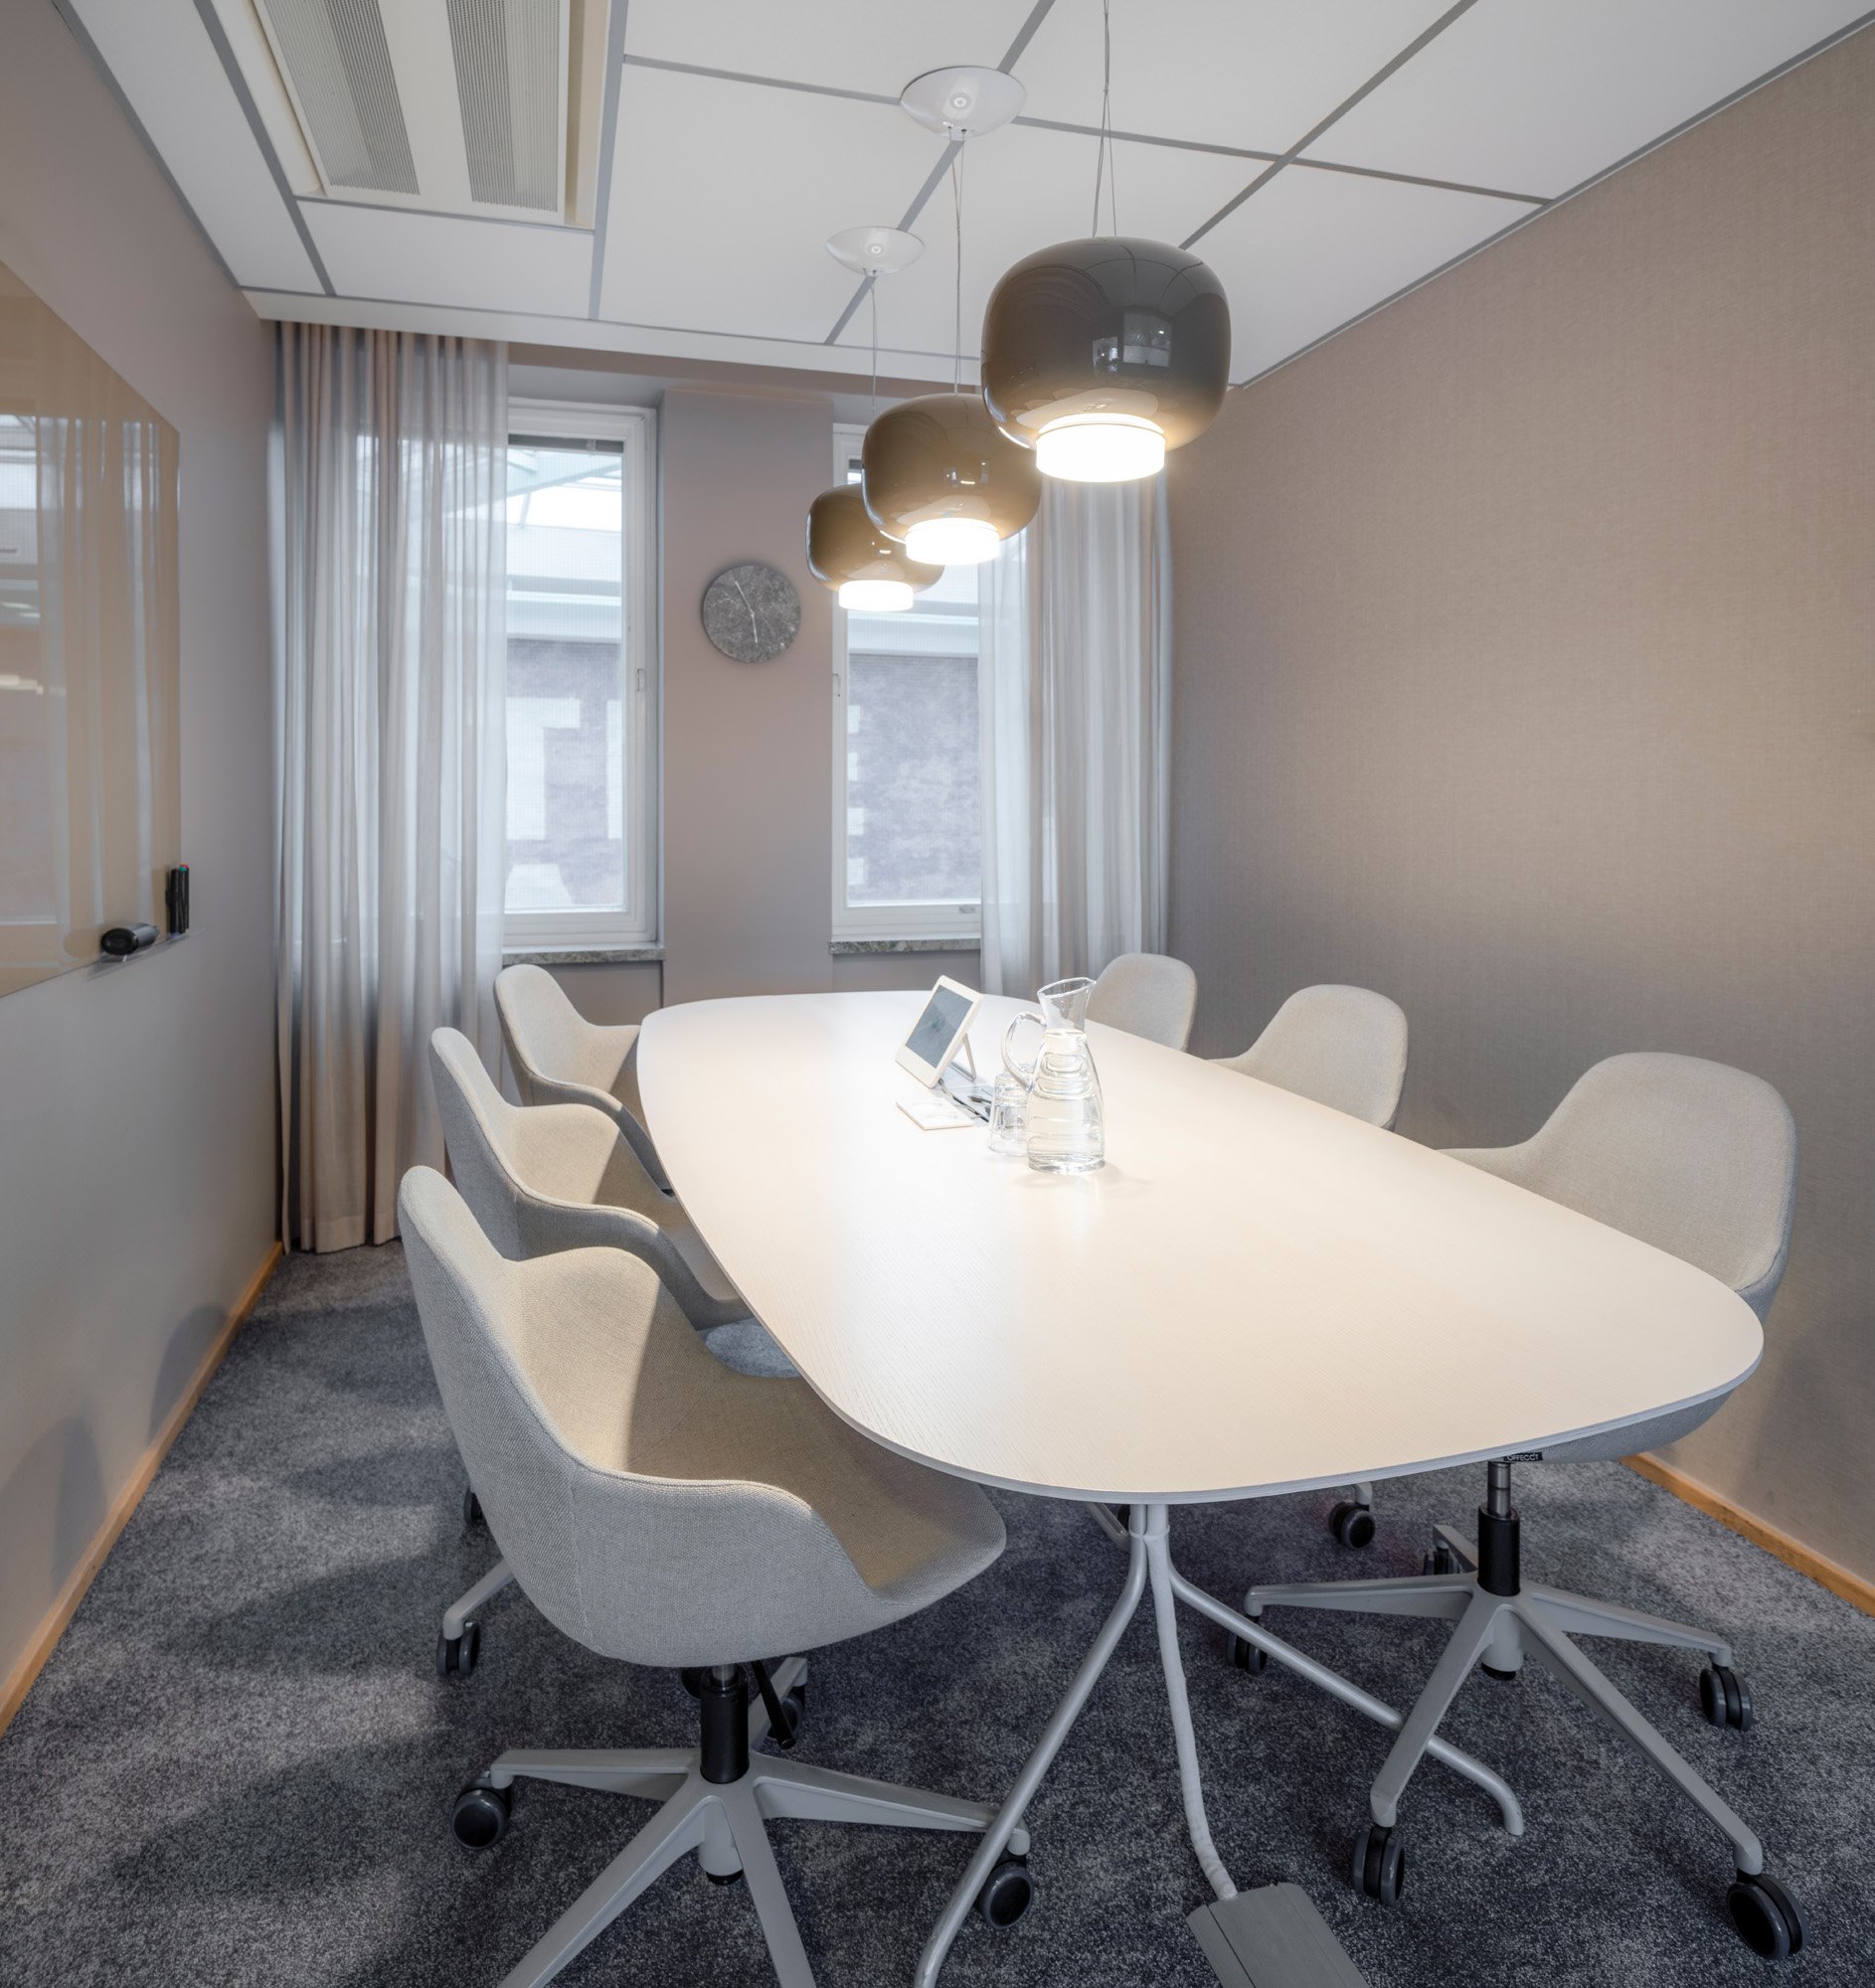 图片[6]|私募股权公司办公室——斯德哥尔摩|ART-Arrakis | 建筑室内设计的创新与灵感